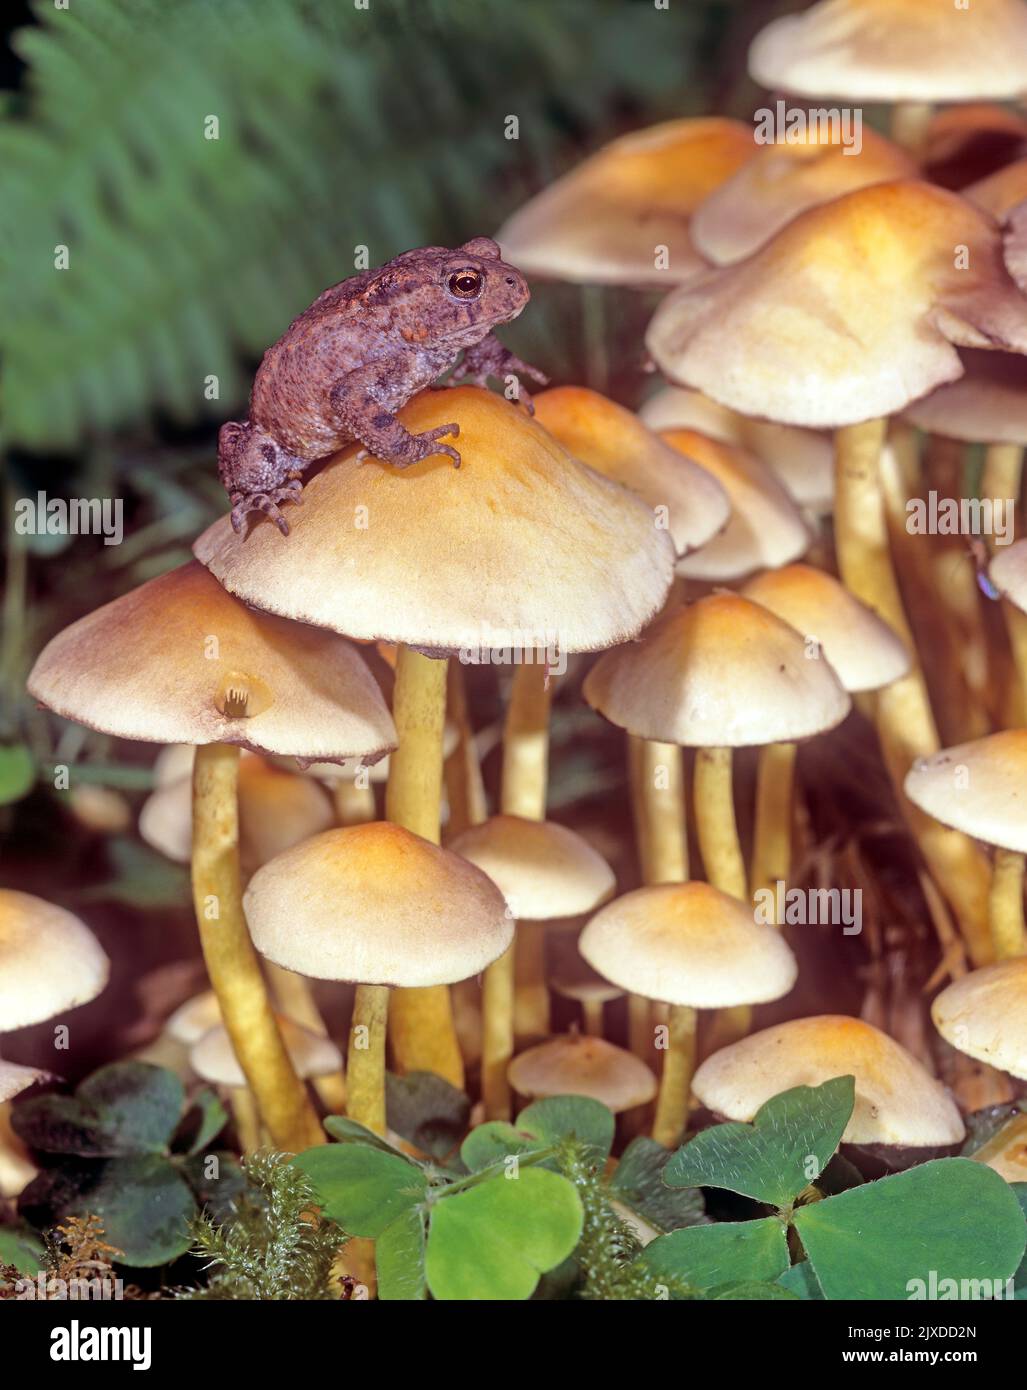 Common Toad (Bufo bufo). Juvenile on  Sulphur Tuft (Hypholoma fasciculare) fungi. Austria Stock Photo